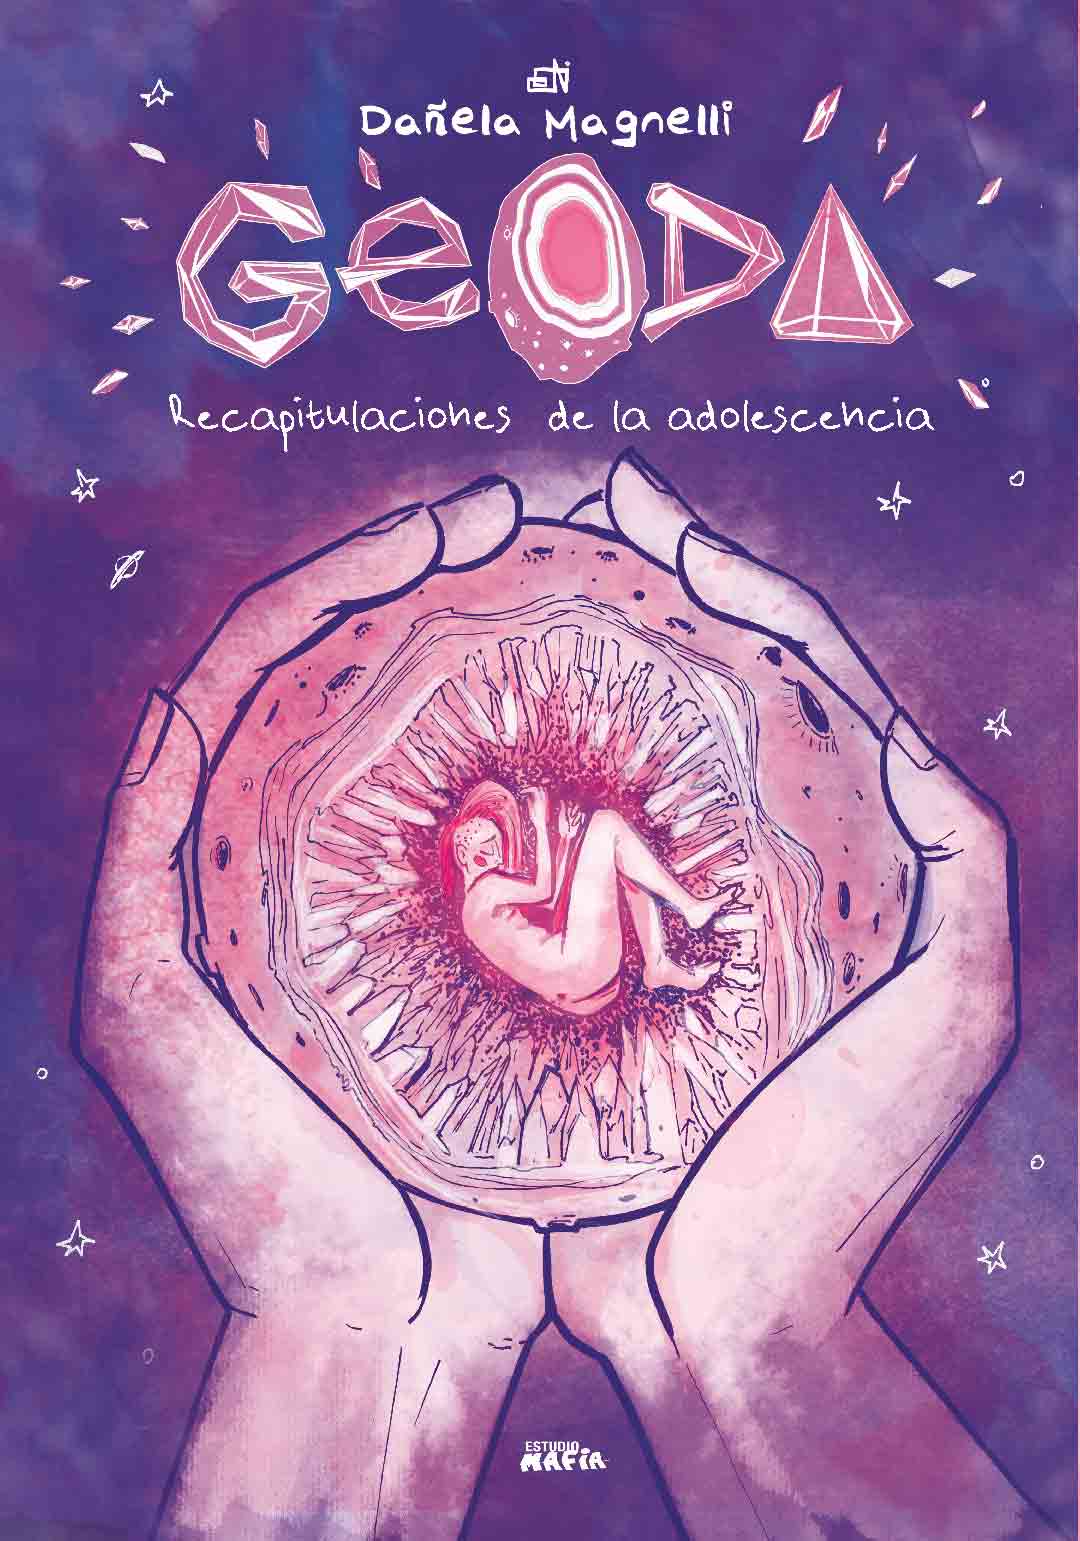 Tapa de "Geoda. Recapitulaciones de la adolescencia", libro de Dañela Magnelli